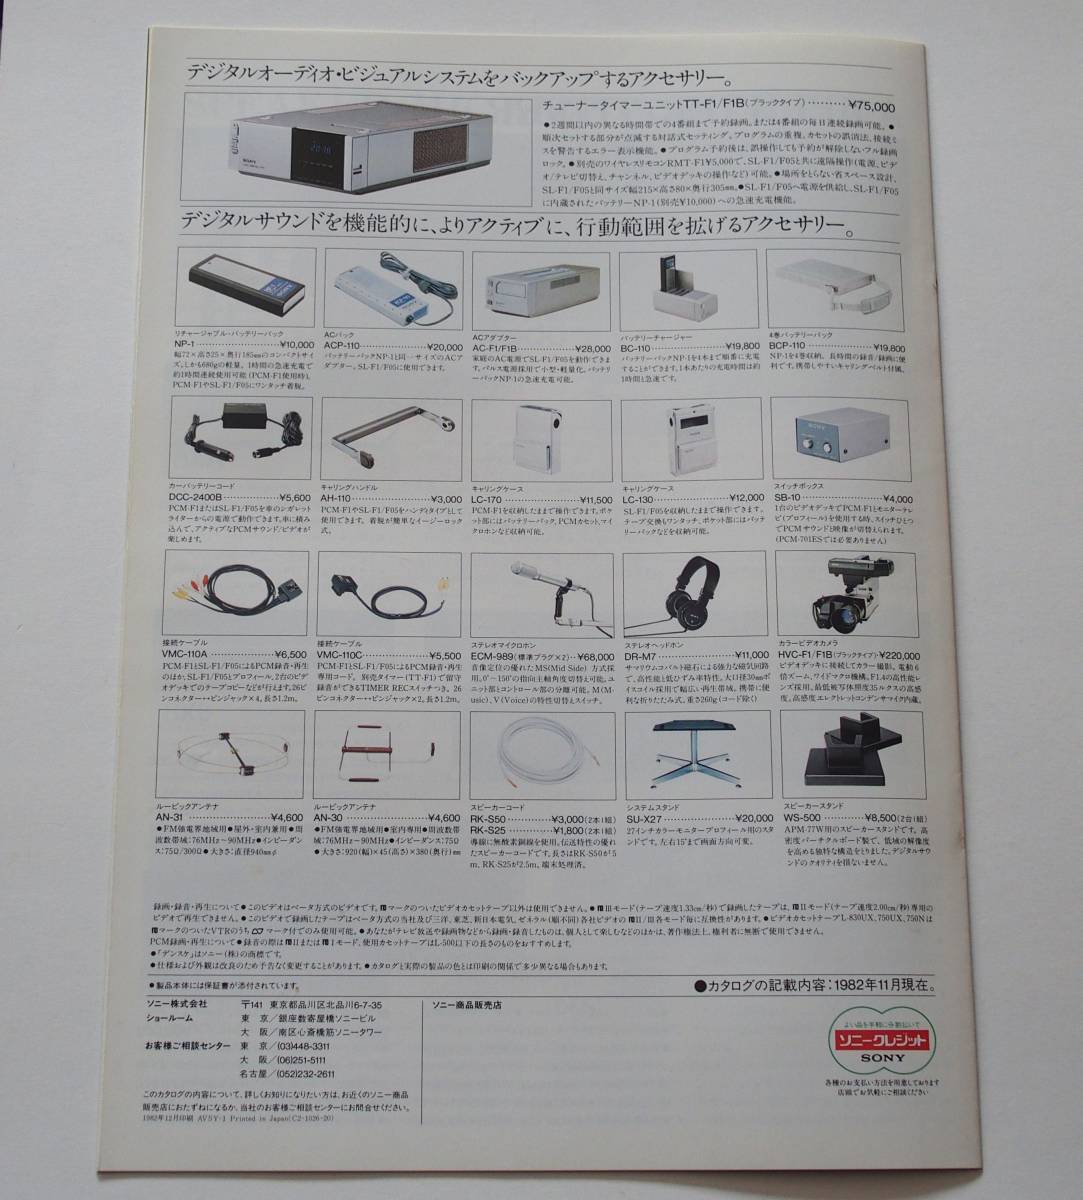 「SONY ソニー PCM-701ES / PCM-F1 / デジタルオーディオシステム カタログ」(1982年11月) ◆ PCMデジタルオーディオプロセッサー カタログ_画像6